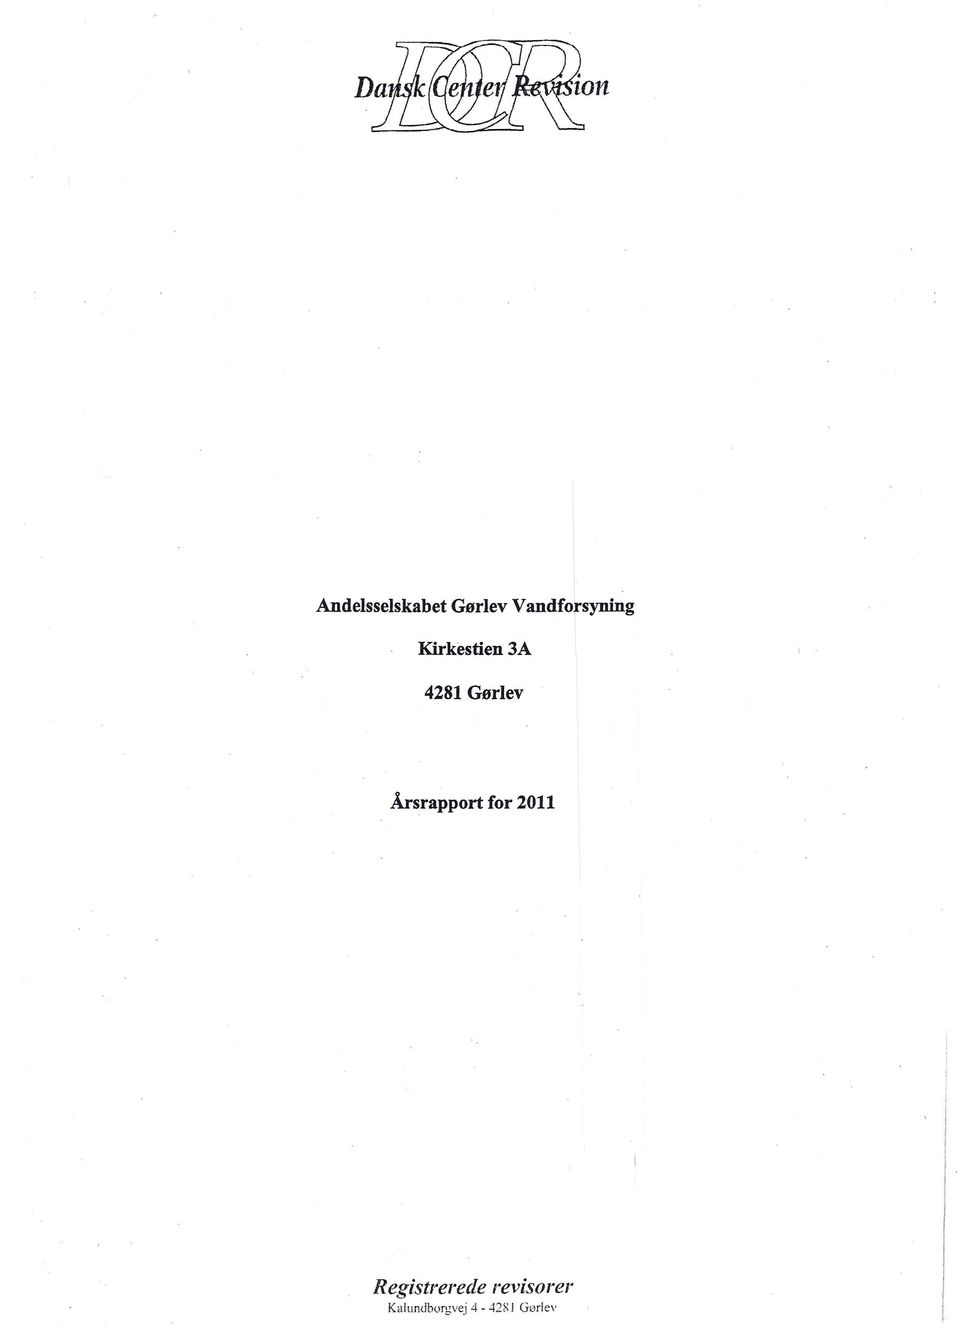 Gørlev Årsrapport for 2011, I II, I